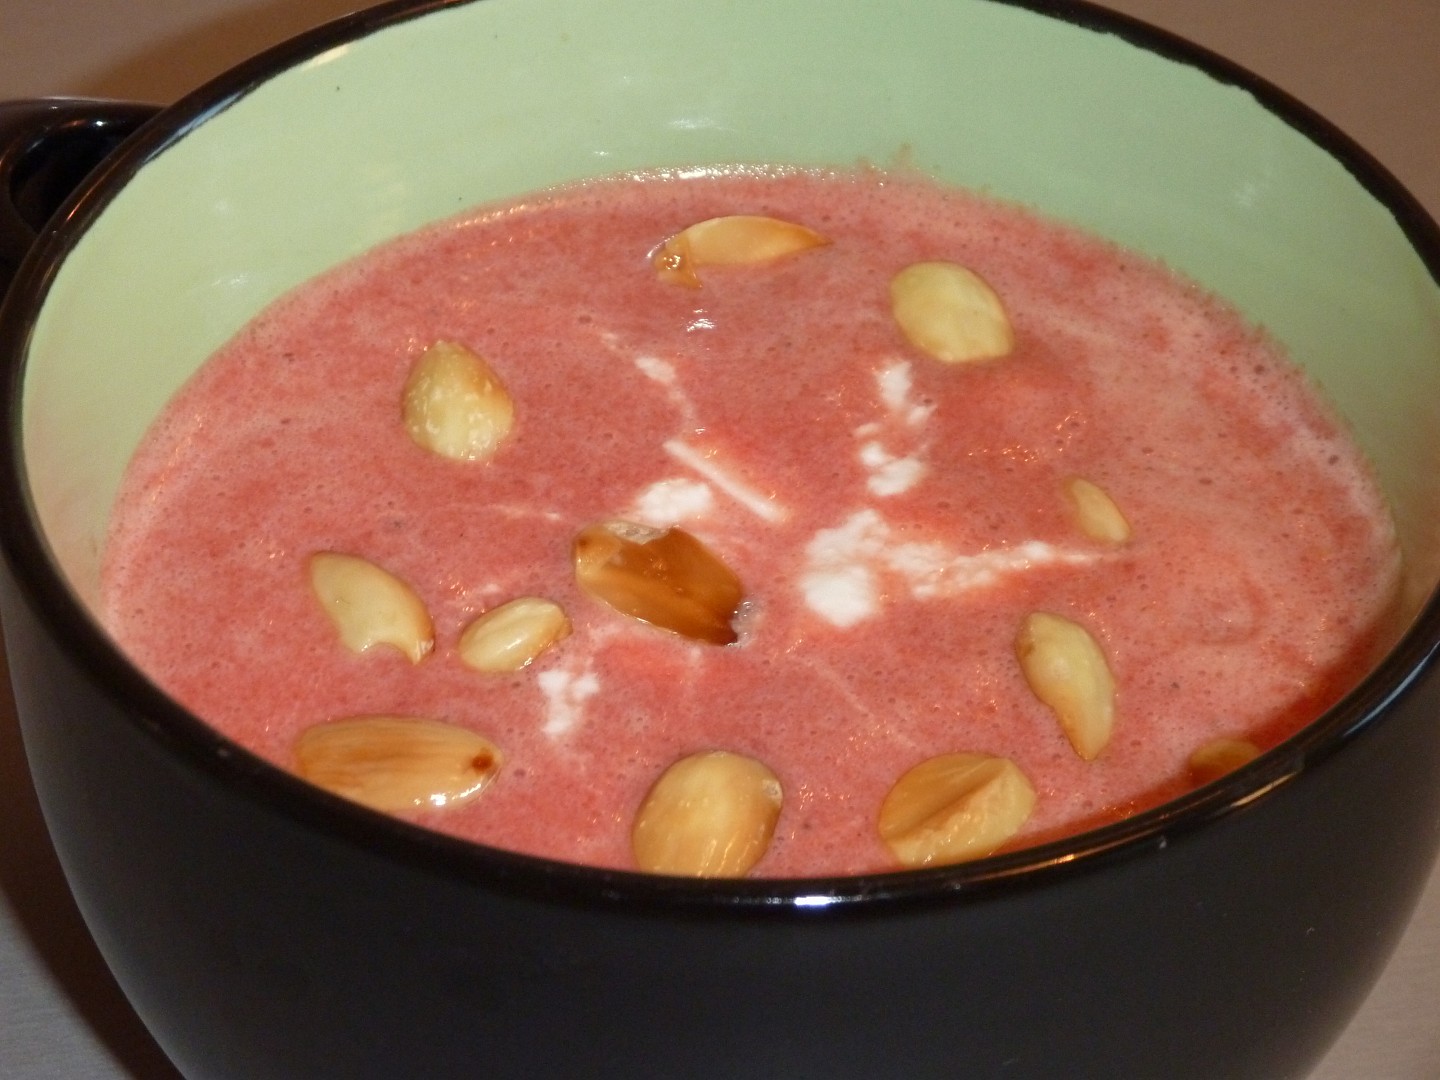 Polévka z červené řepy se šlehačkou a mandličkami